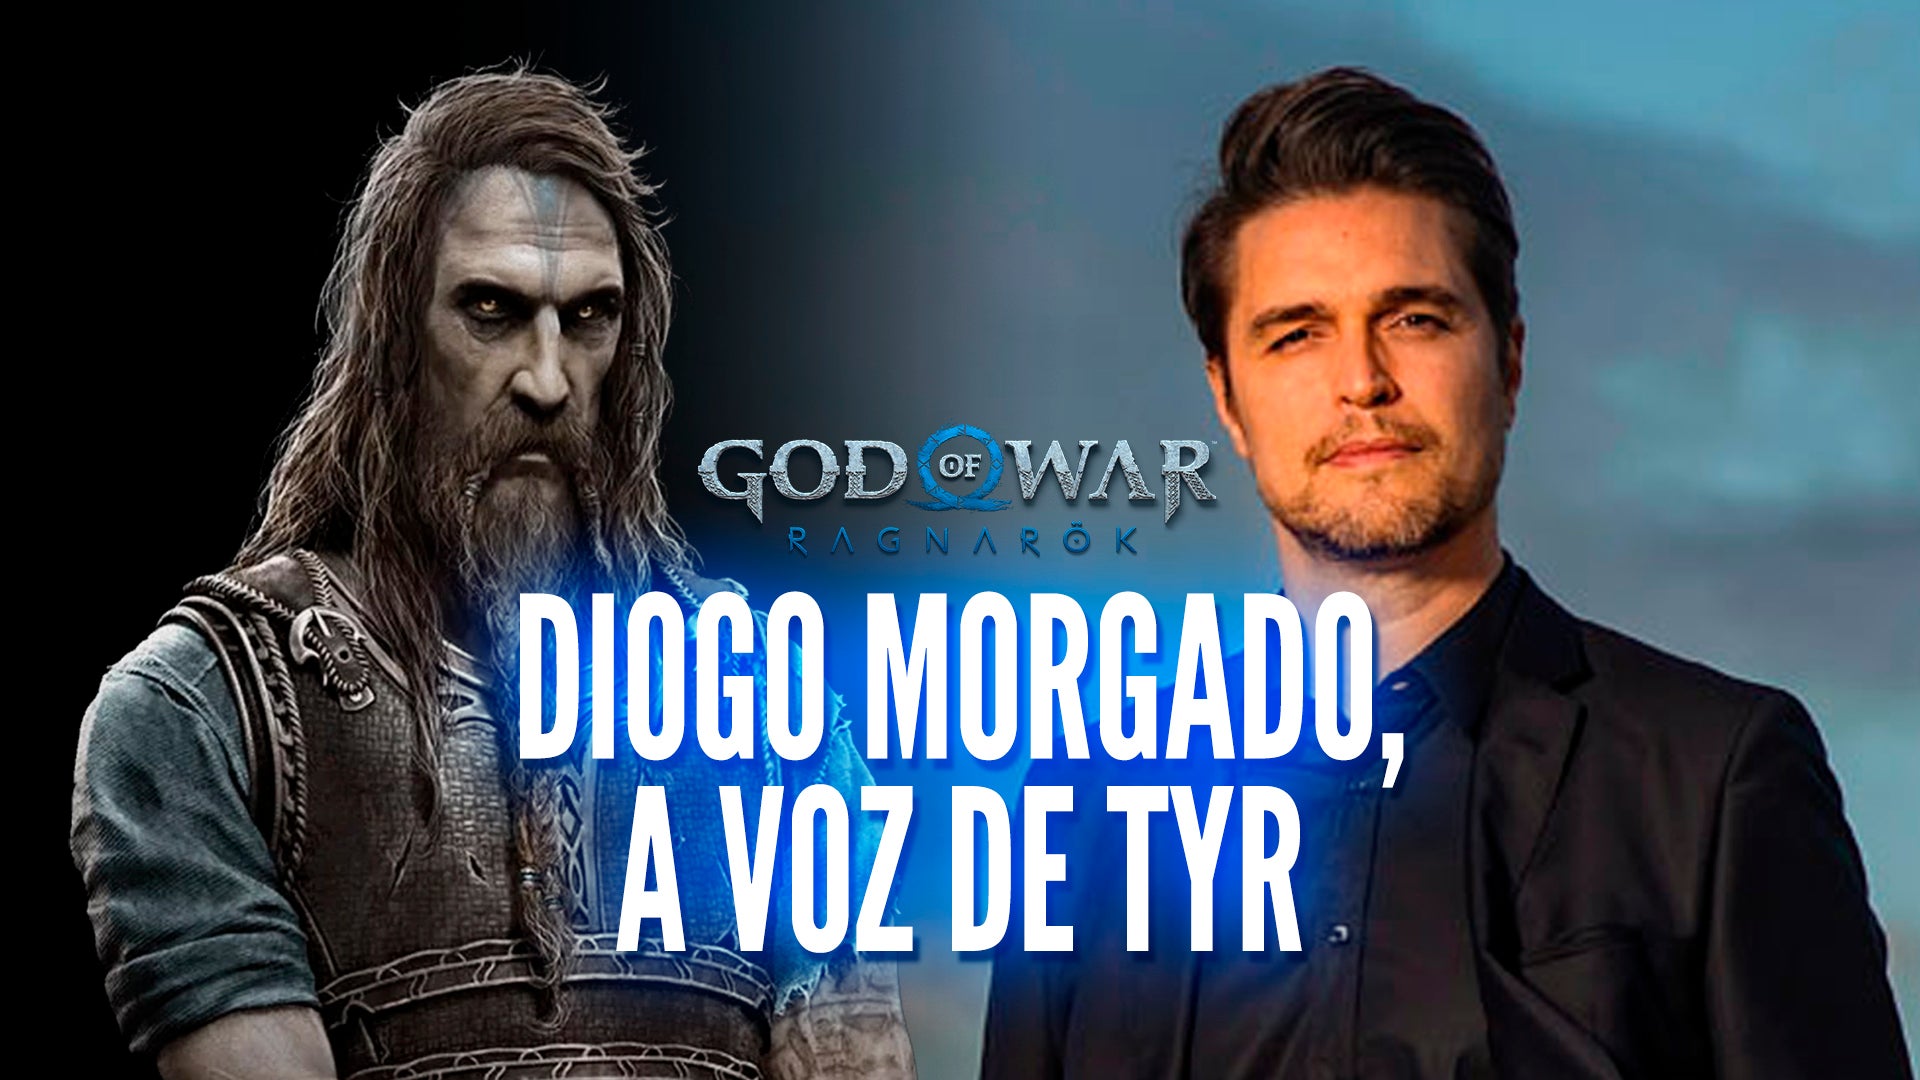 Imagem para Entrevista com Diogo Morgado, a voz portuguesa de Tyr em God of War Ragnarok